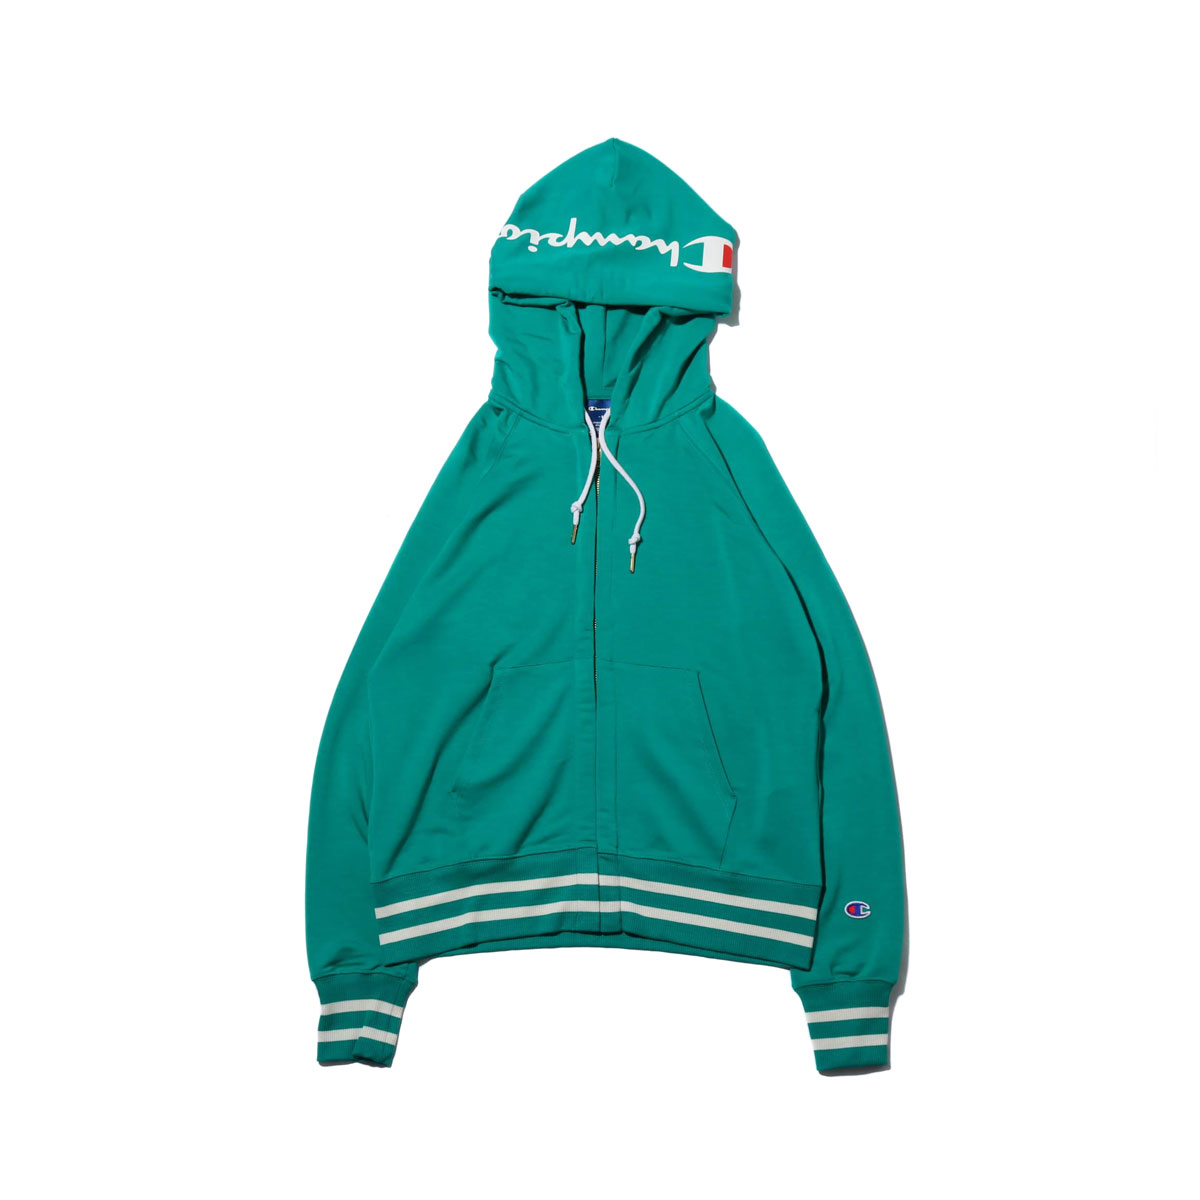 kelly green zip up hoodie